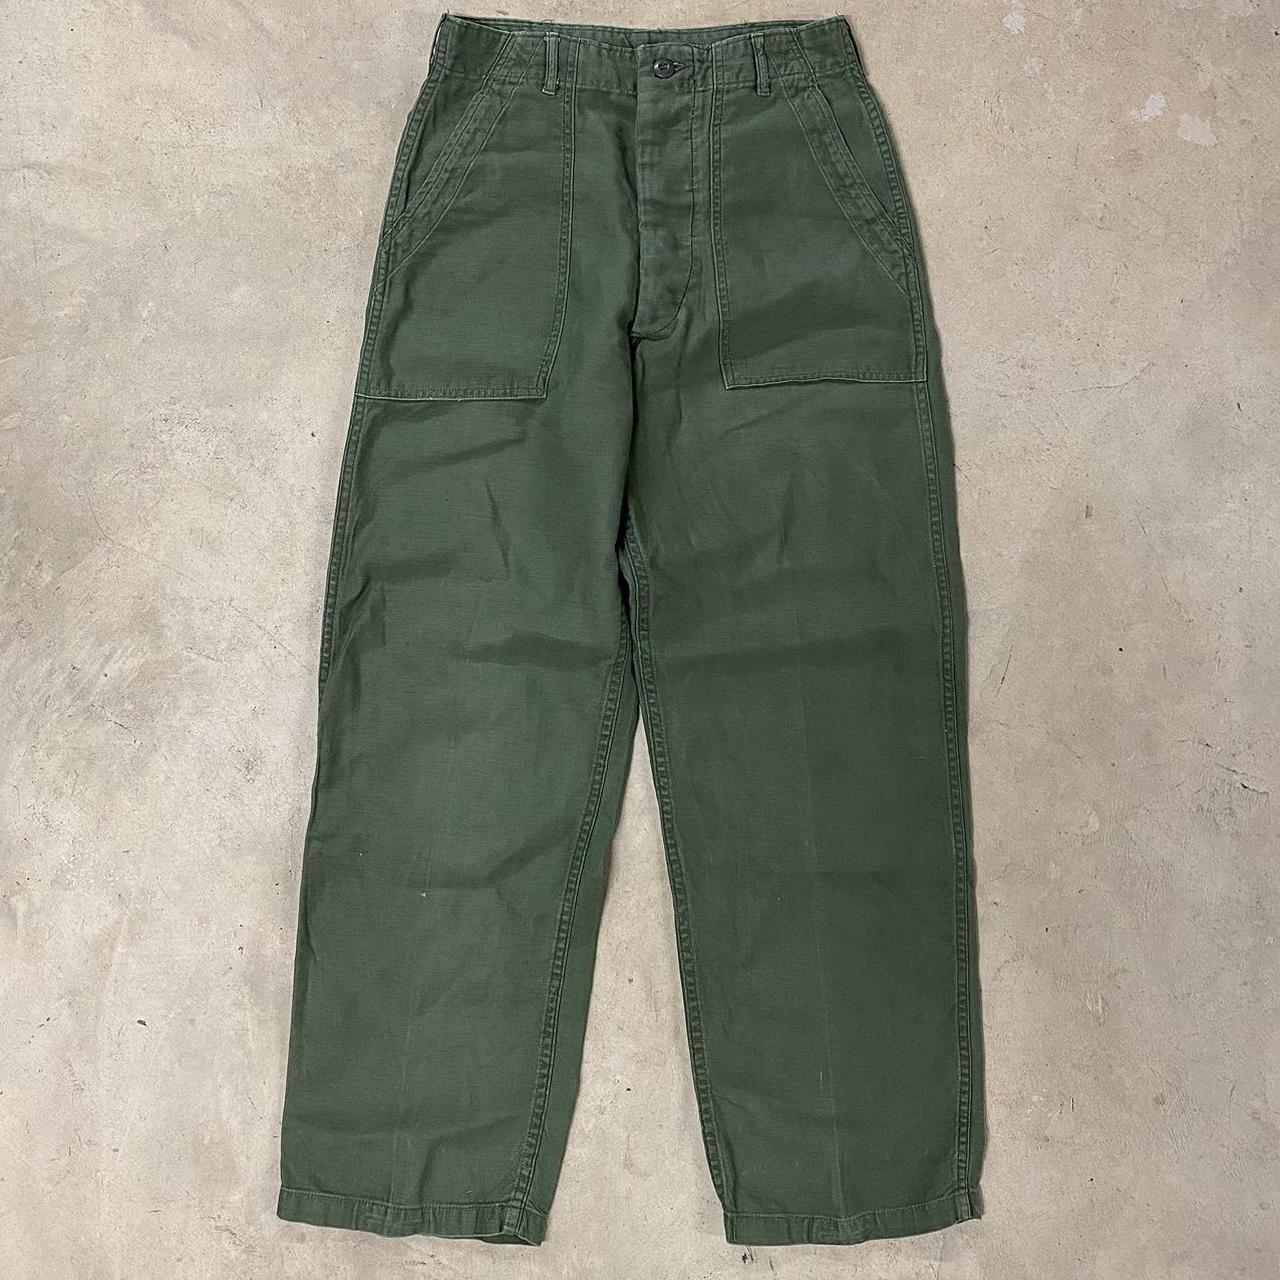 Vintage 1970s US Army OG-107 Sateen Bakers Pants... - Depop